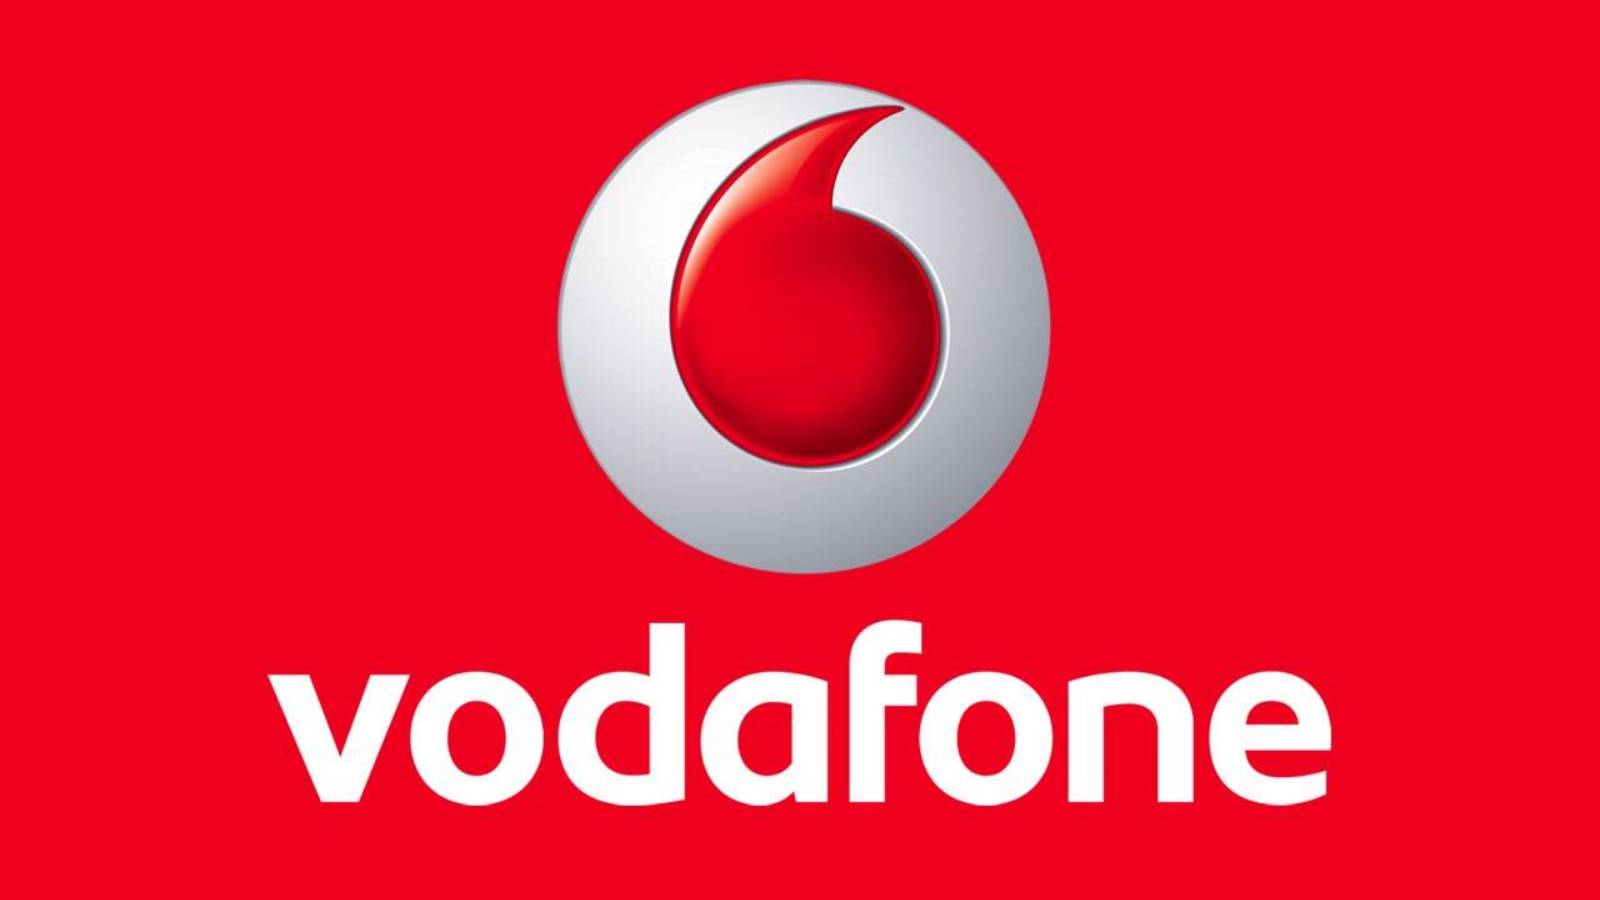 Vodafone Anuntul SPECIAL Clienti Ofera GRATUIT Romania Acum